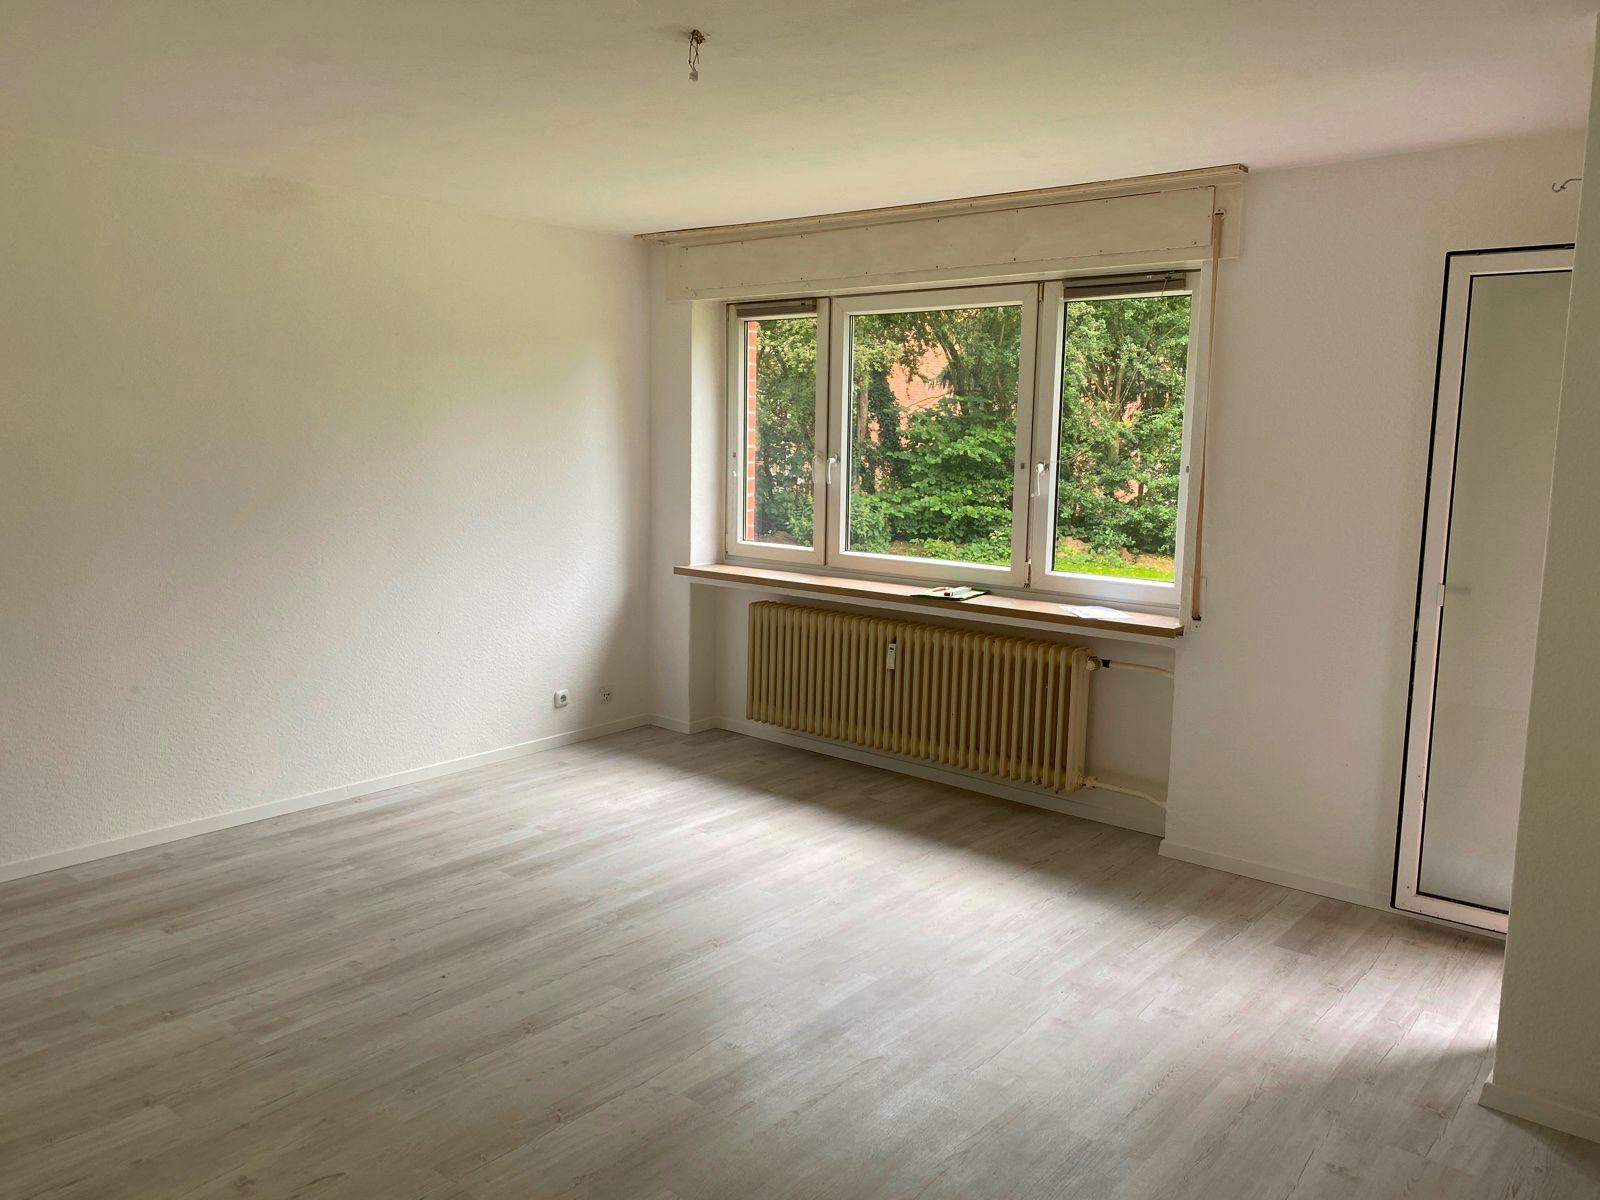 Bild 6 Gut geschnittene, moderne Wohnung | Hambergen in Niedersachsen | 82.11m² | 85.000€